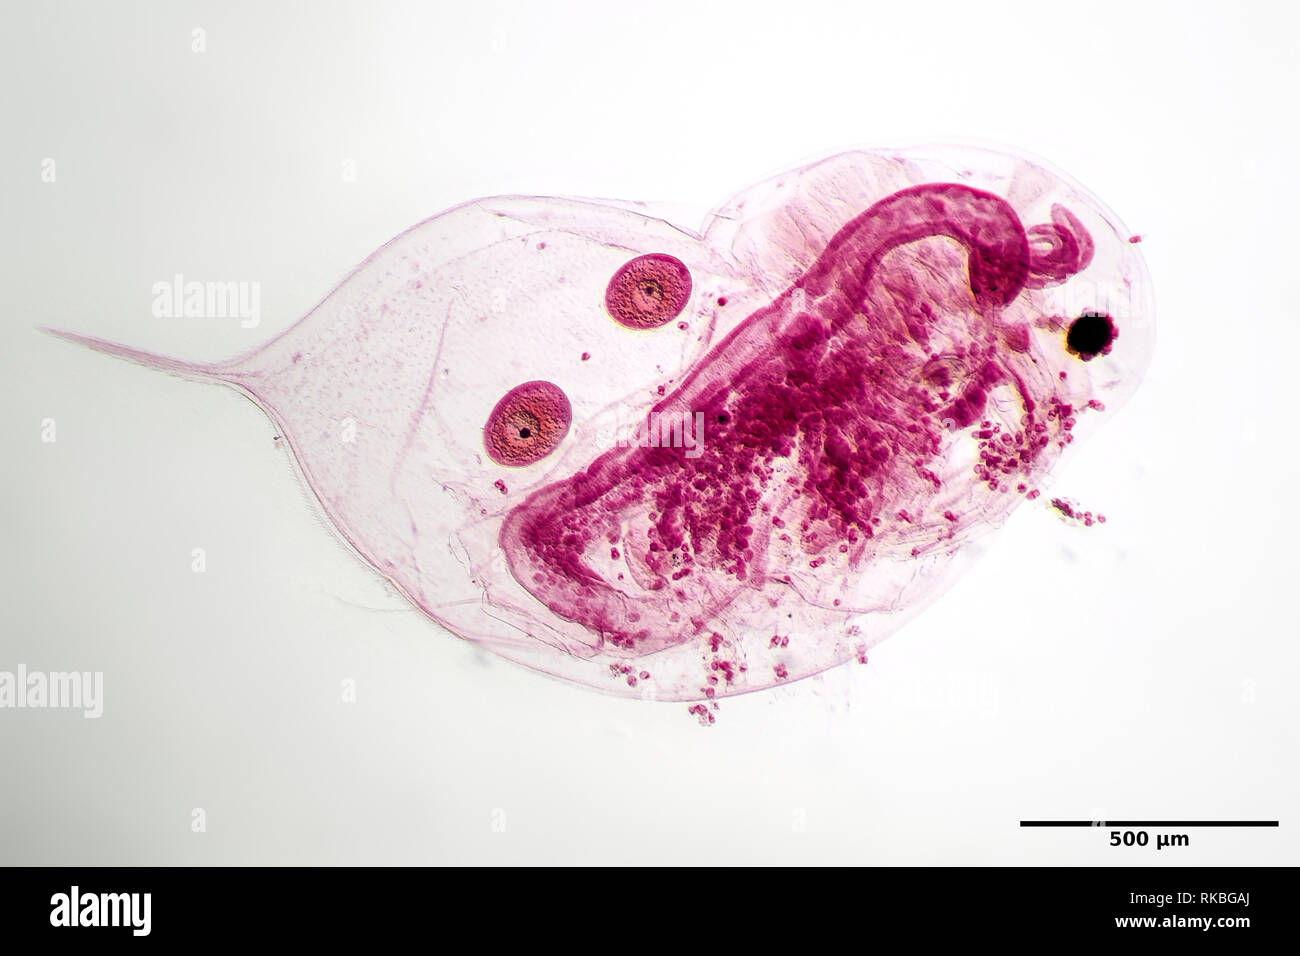 Daphnia con dos huevos (manchado) bajo el microscopio. Foto de stock